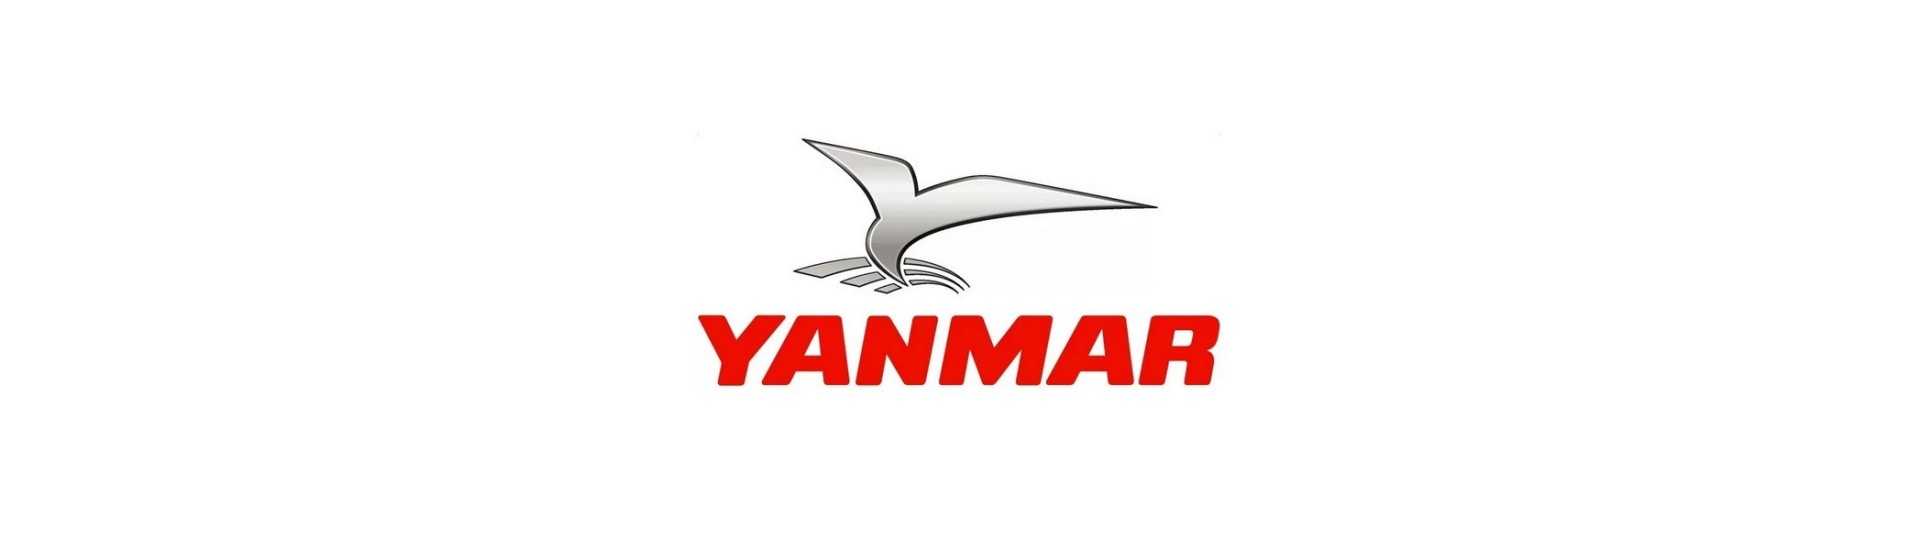 Cel mai bun preț pentru o mașină fără permis Yanmar